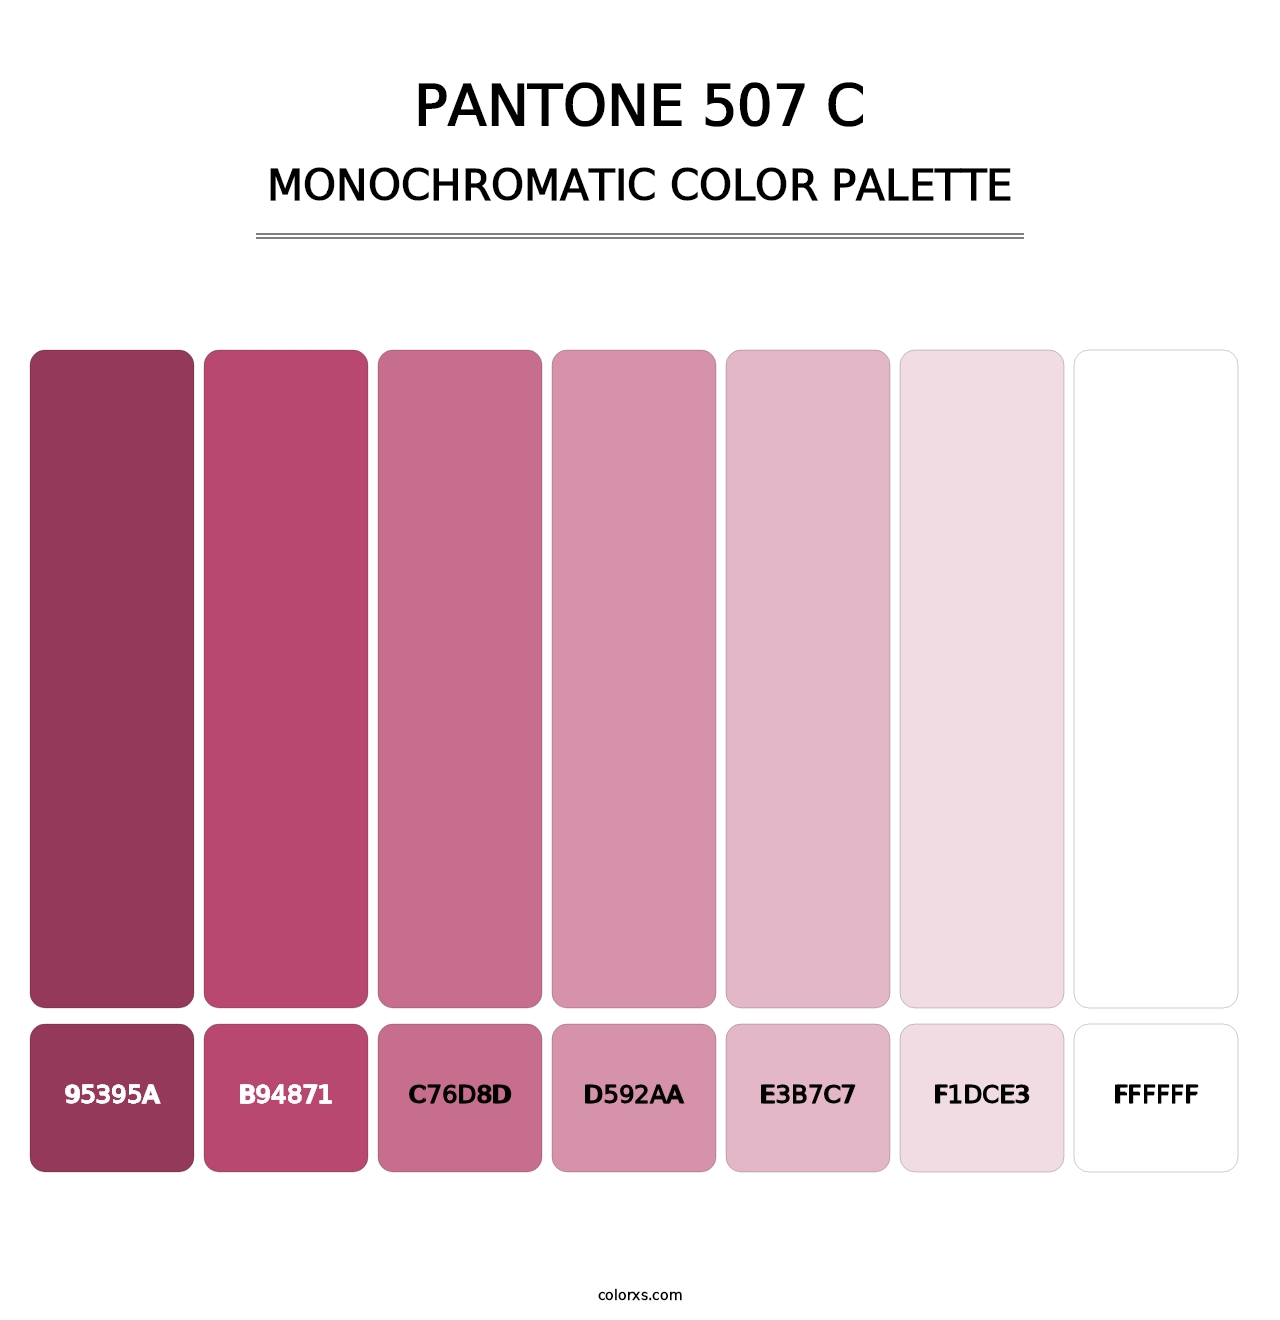 PANTONE 507 C - Monochromatic Color Palette